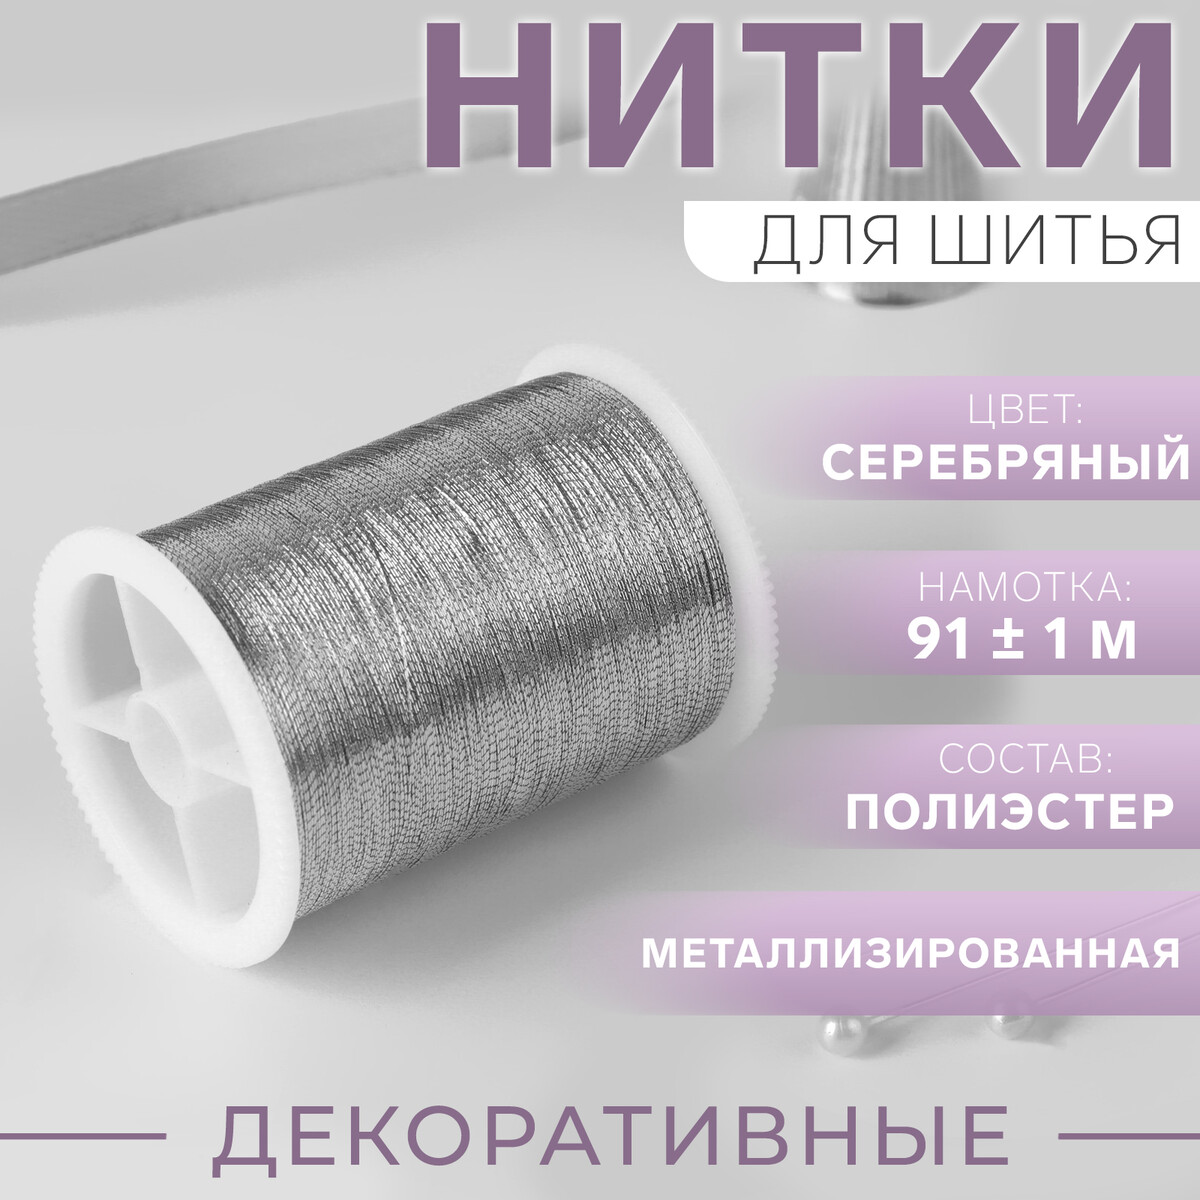 Нить металлизированная, 91 ± 1 м, цвет серебряный эластомерная нить для бисероплетения cпандекс 100 метров сечение 0 5 мм